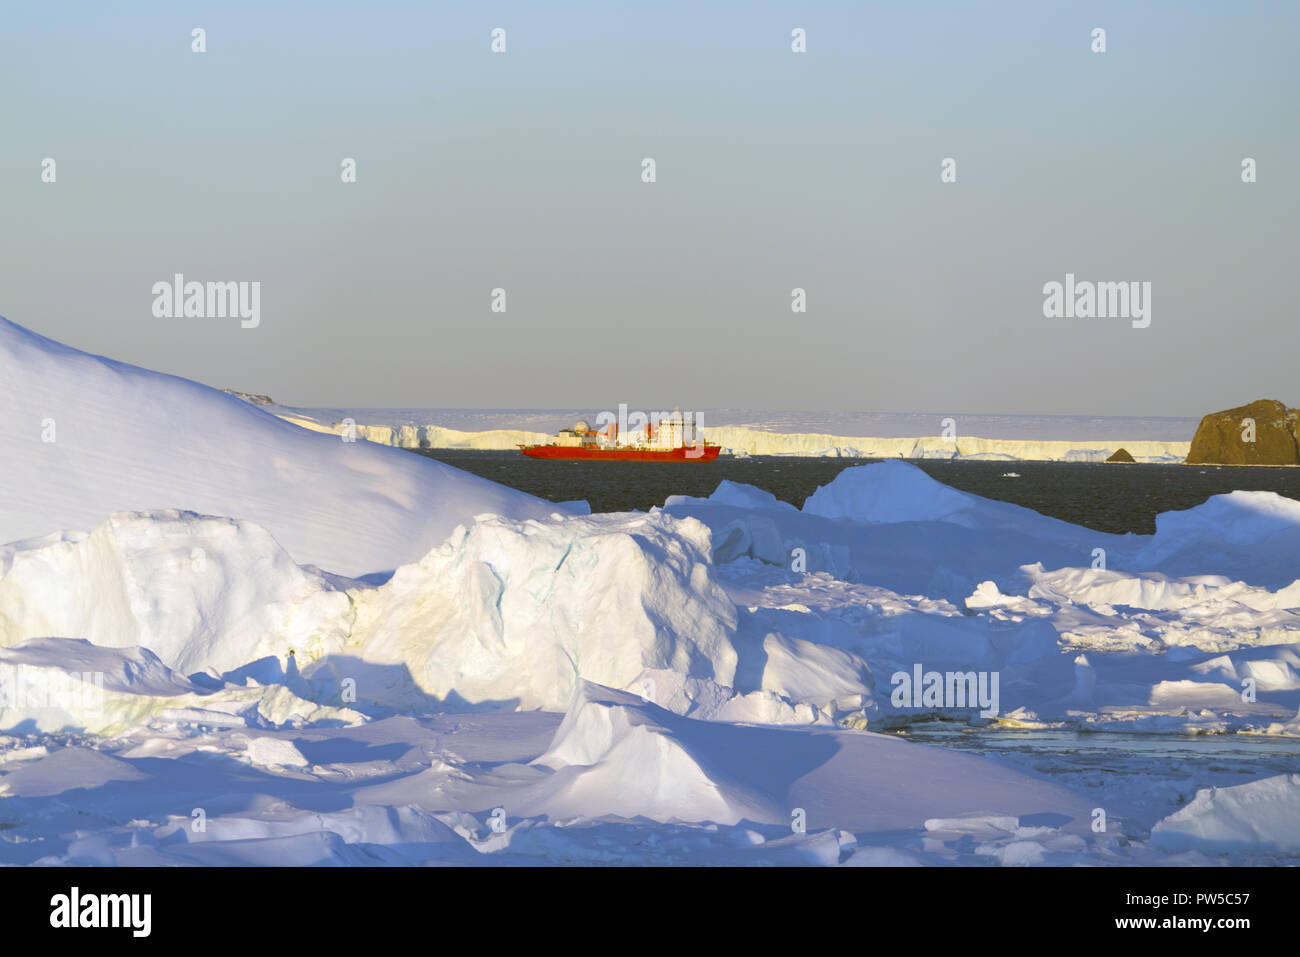 Panorama et l'air juste sur la banquise, le relief et les paysages de l'Antarctique. Lever du soleil, le jour, le coucher du soleil. Tournage avec quadrocopter. Banque D'Images